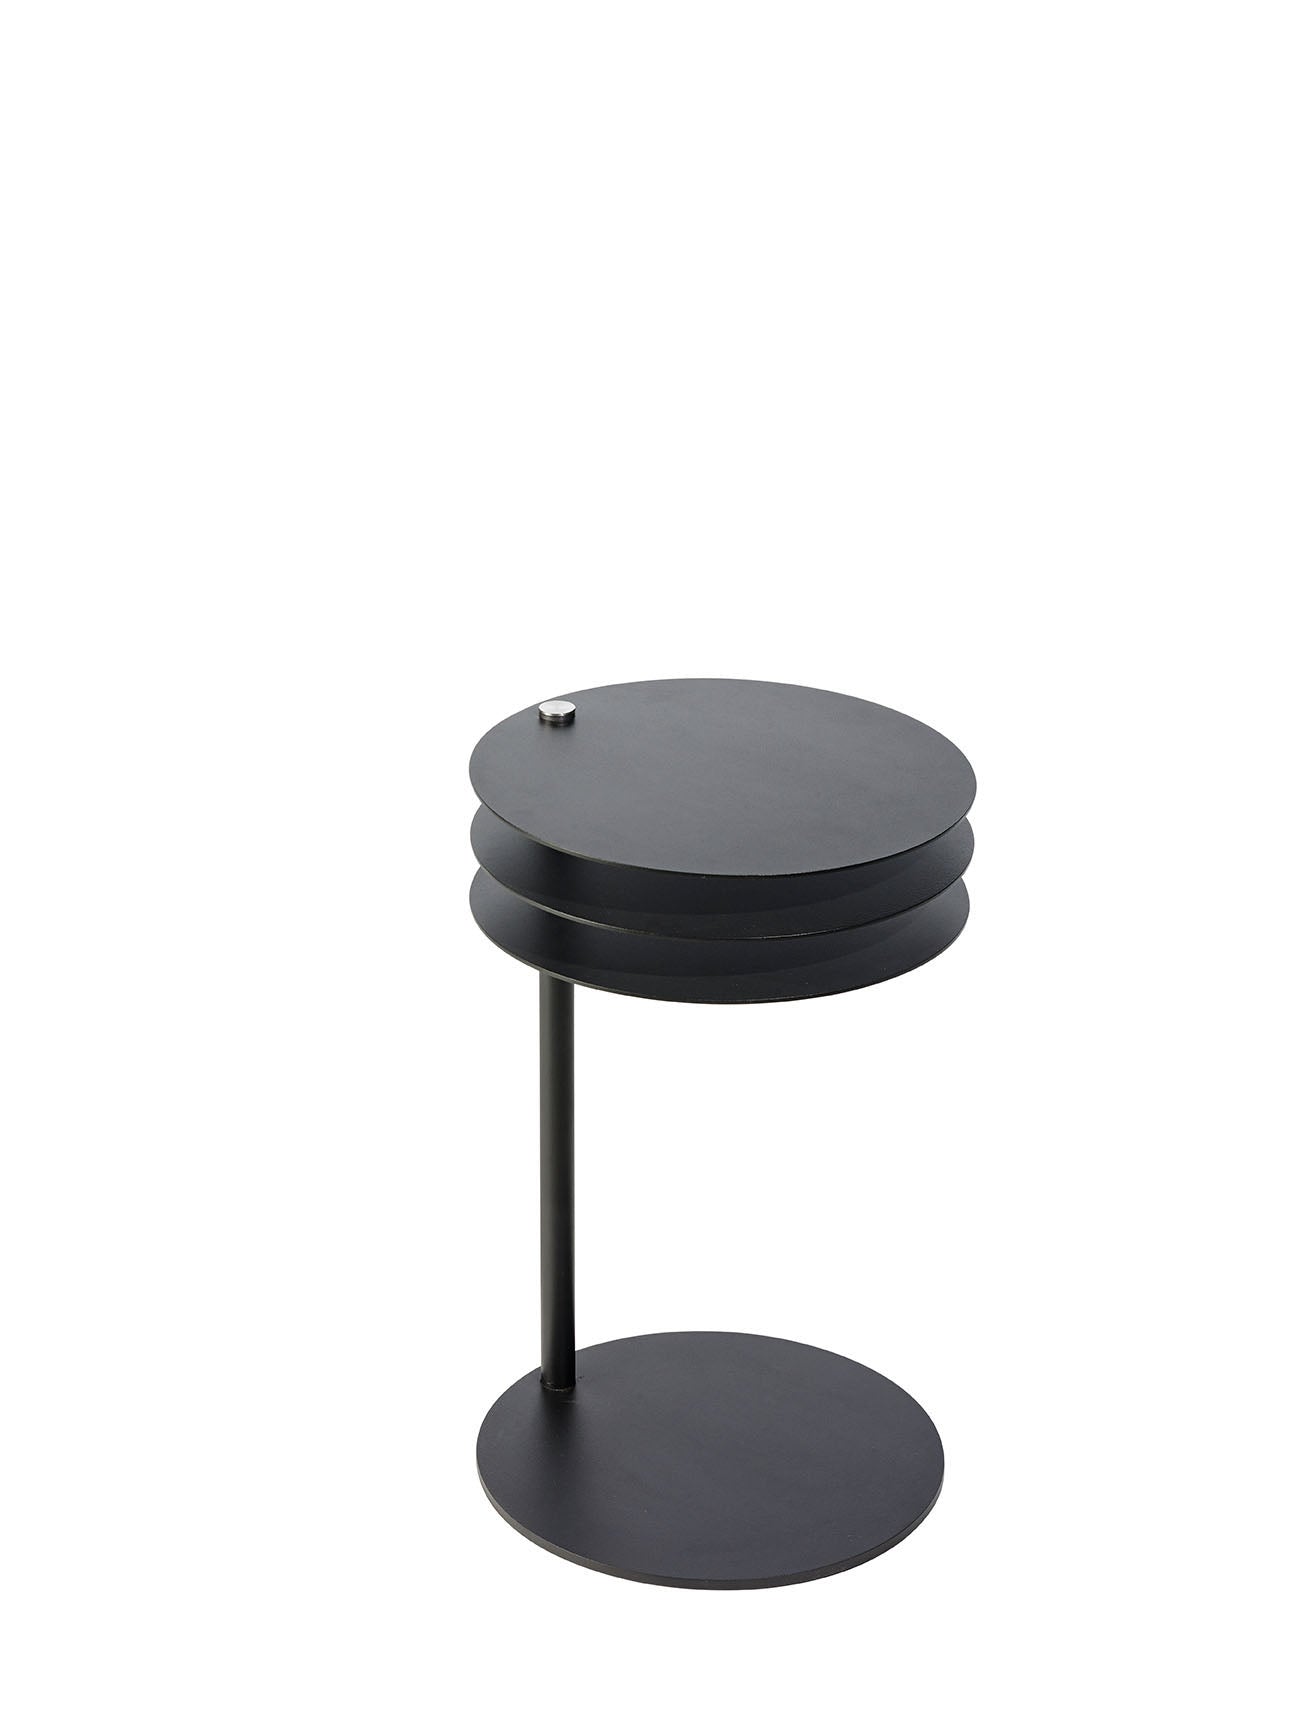 MOLINO Beistelltisch in schwarz präsentiert im Onlineshop von KAQTU Design AG. Beistelltisch ist von Pieperconcept